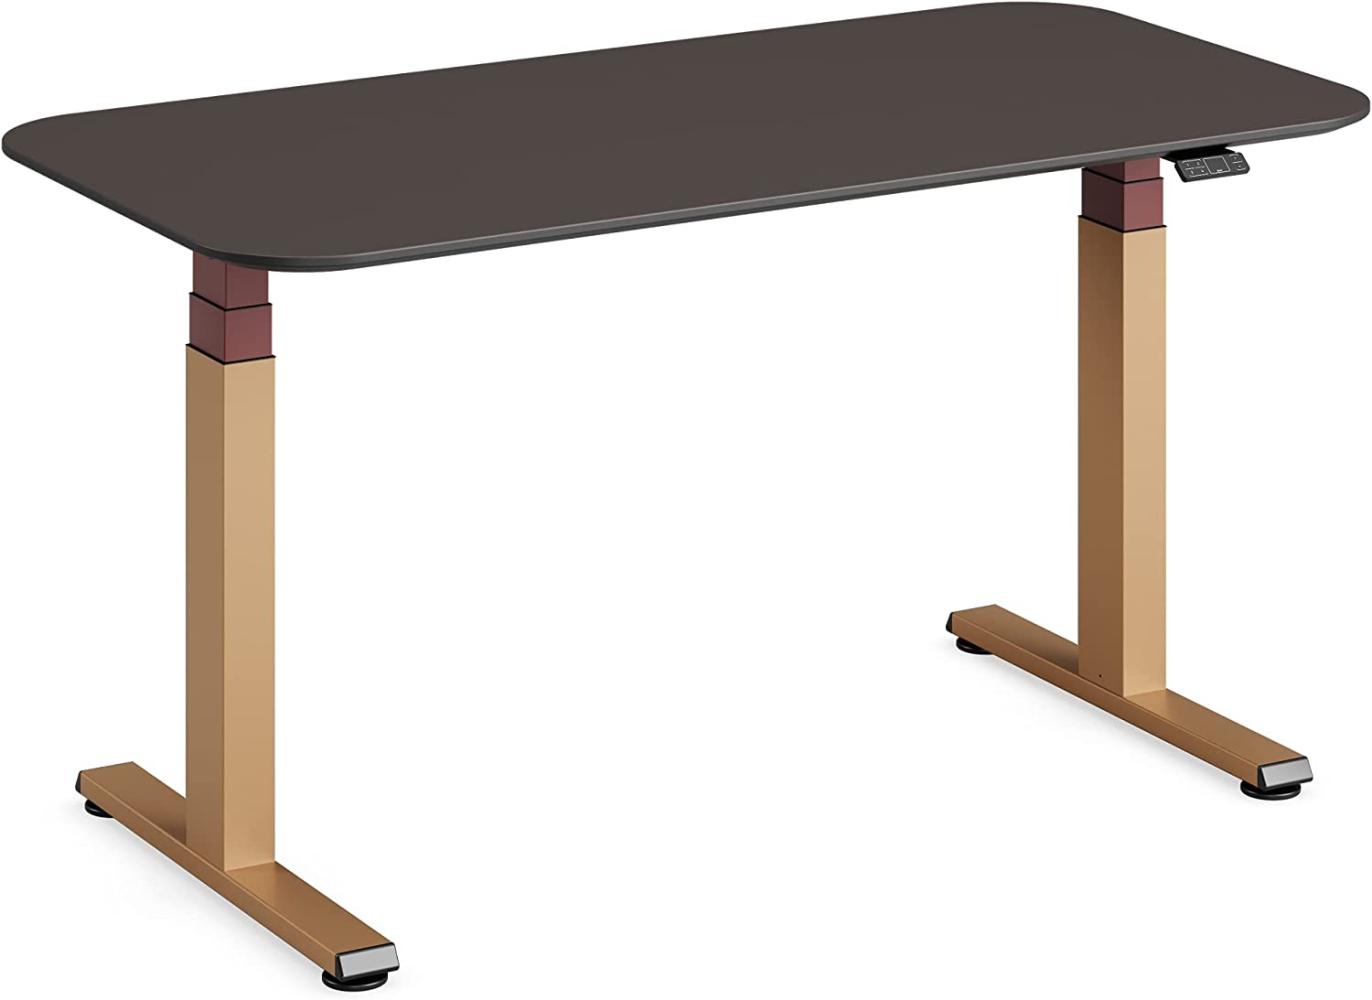 Steelcase Solo höhenverstellbarer Sitz-Steh-Schreibtisch mit Tischplatte aus Linoleum in Mauve und Gestell in Messing Matt mit der Akzentfarbe Merlot (140 x 70 cm) Bild 1